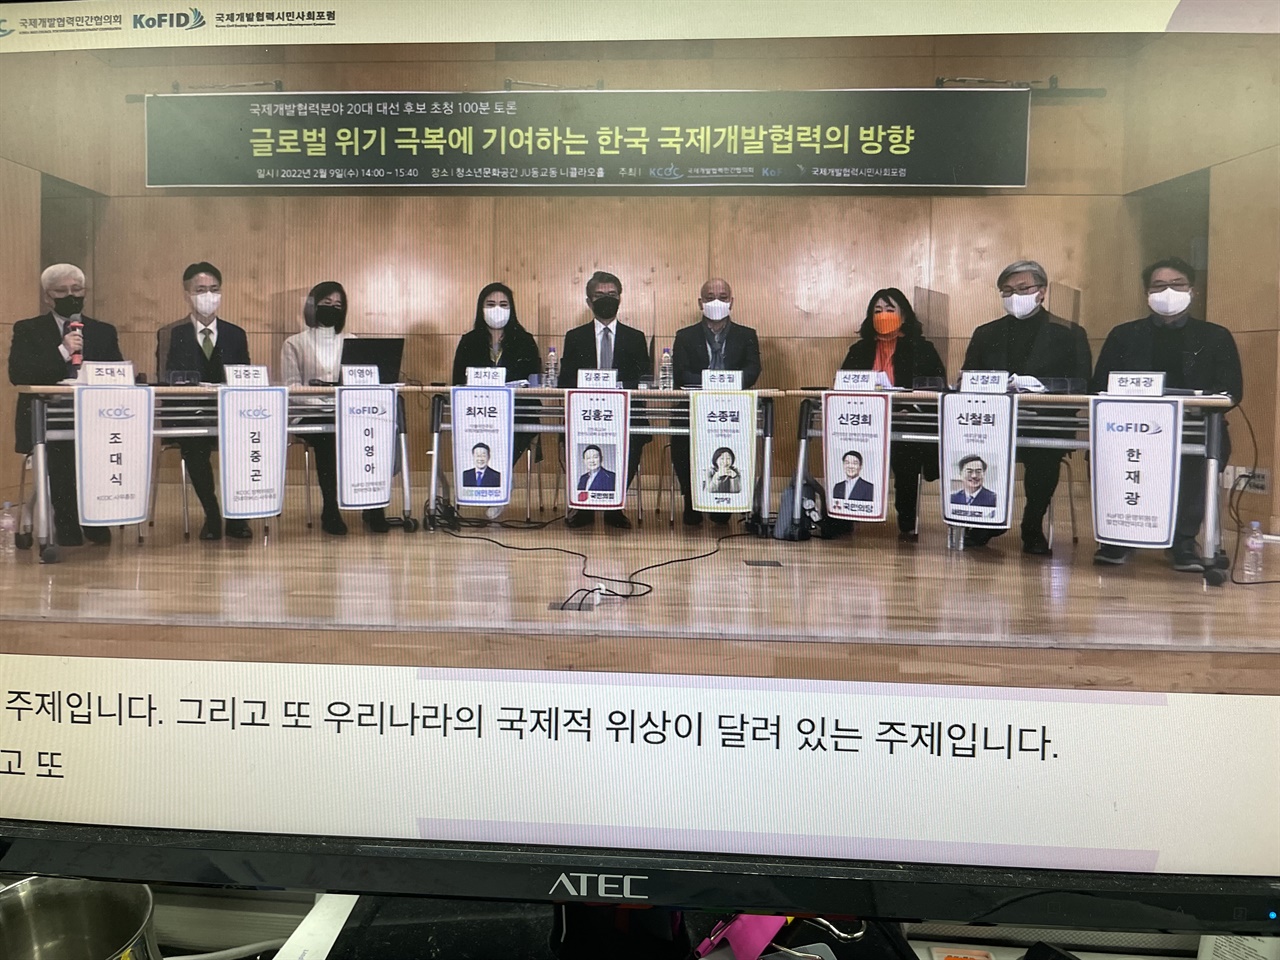  '글로벌 위기극복에 기여하는 한국 국제개발협력의 방향' 토론회 장면 
